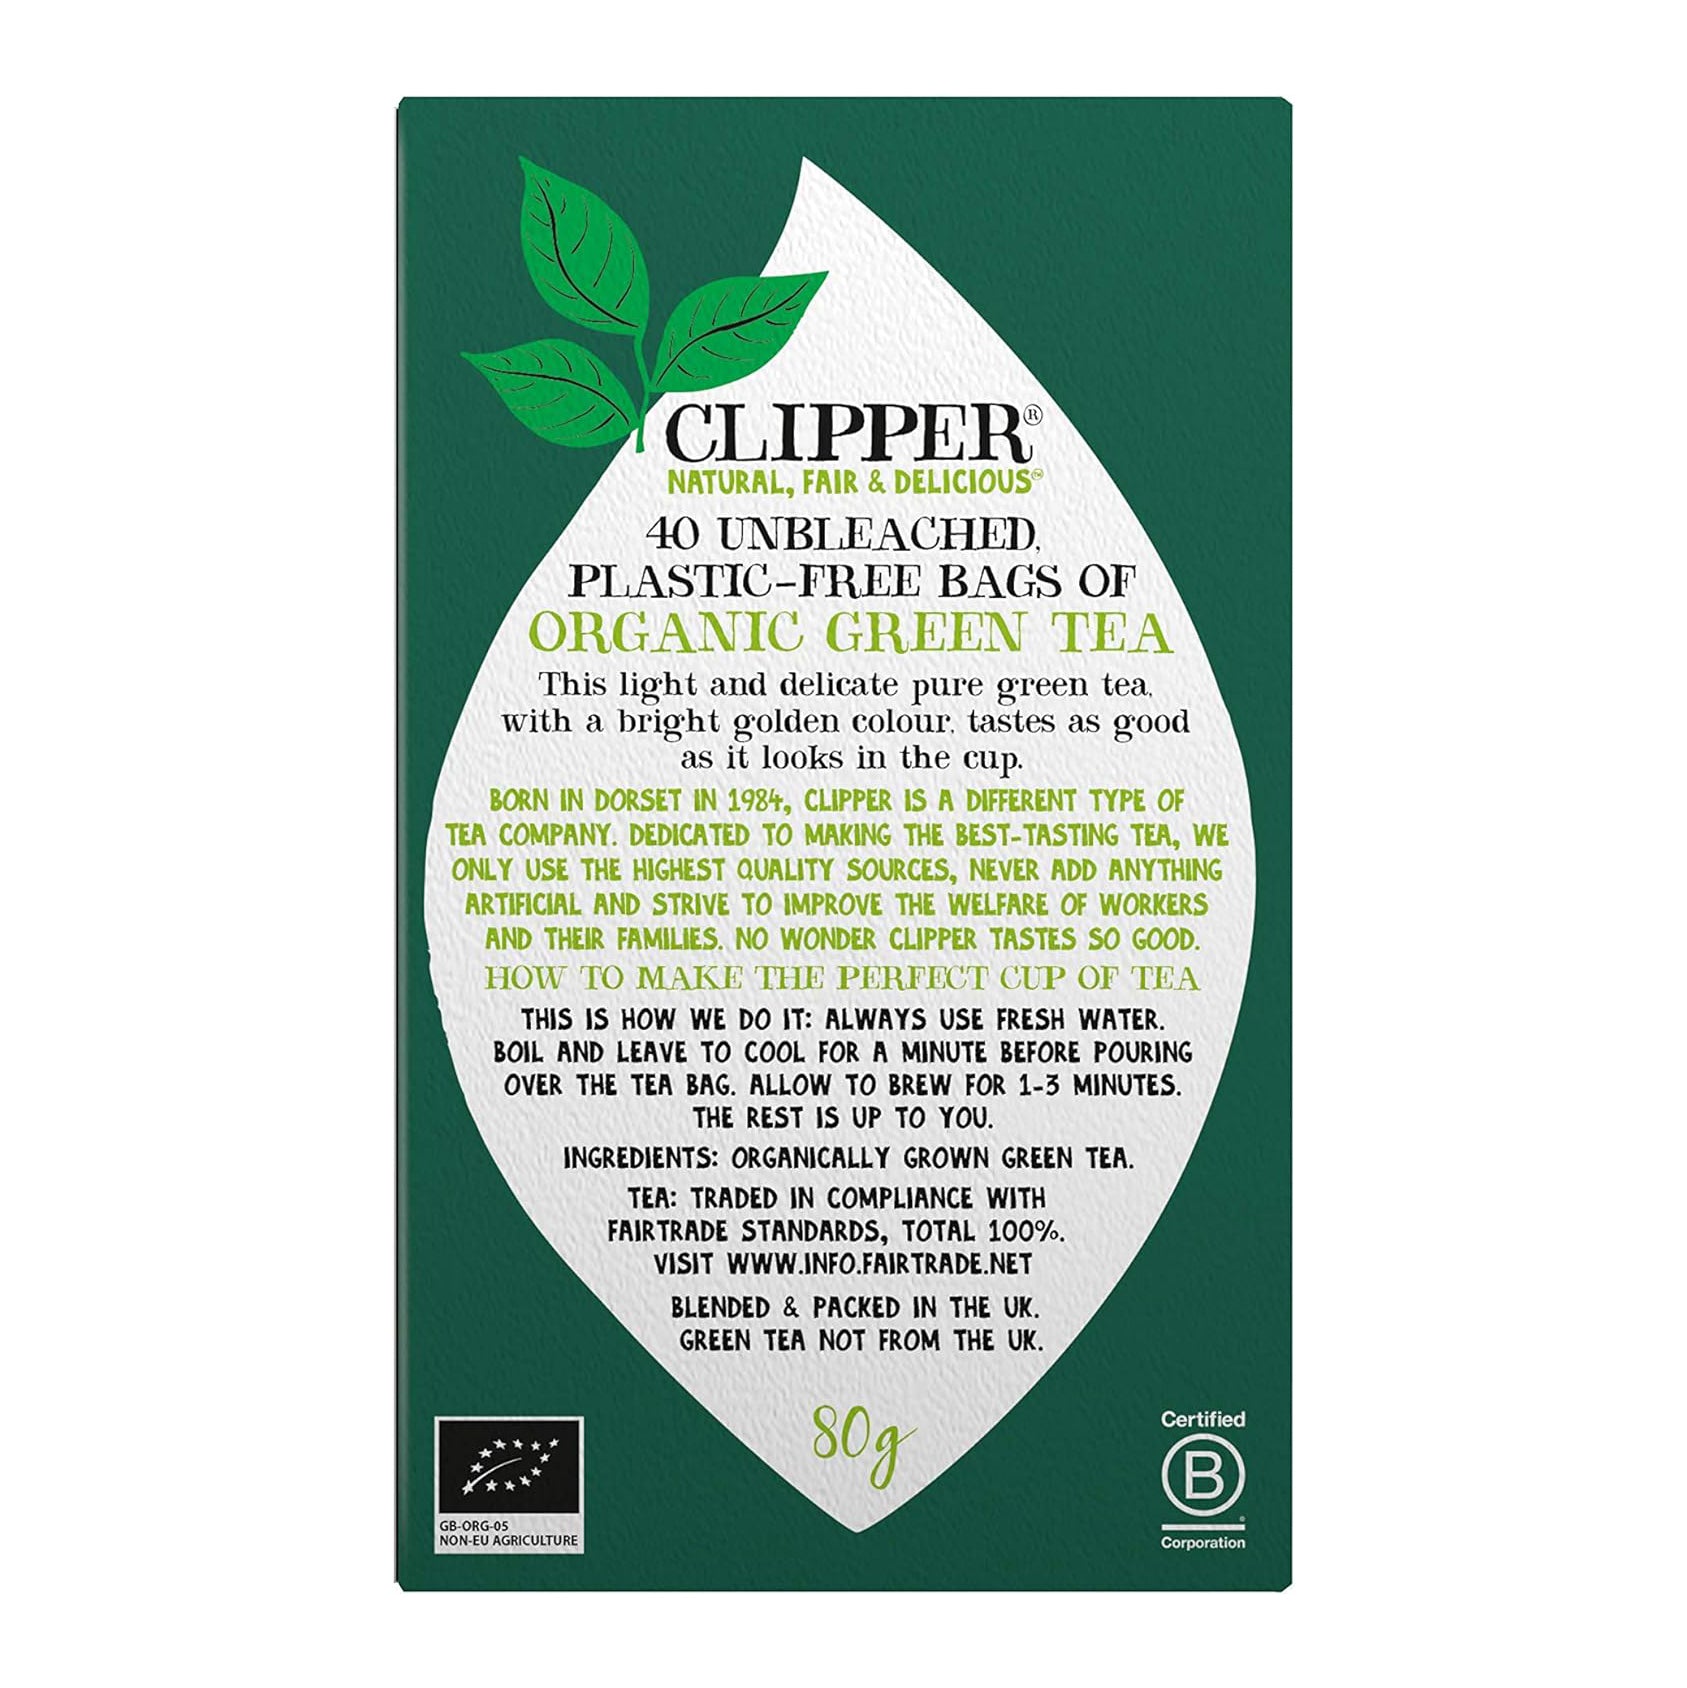 Organic Fairtrade Green Tea 40 bags